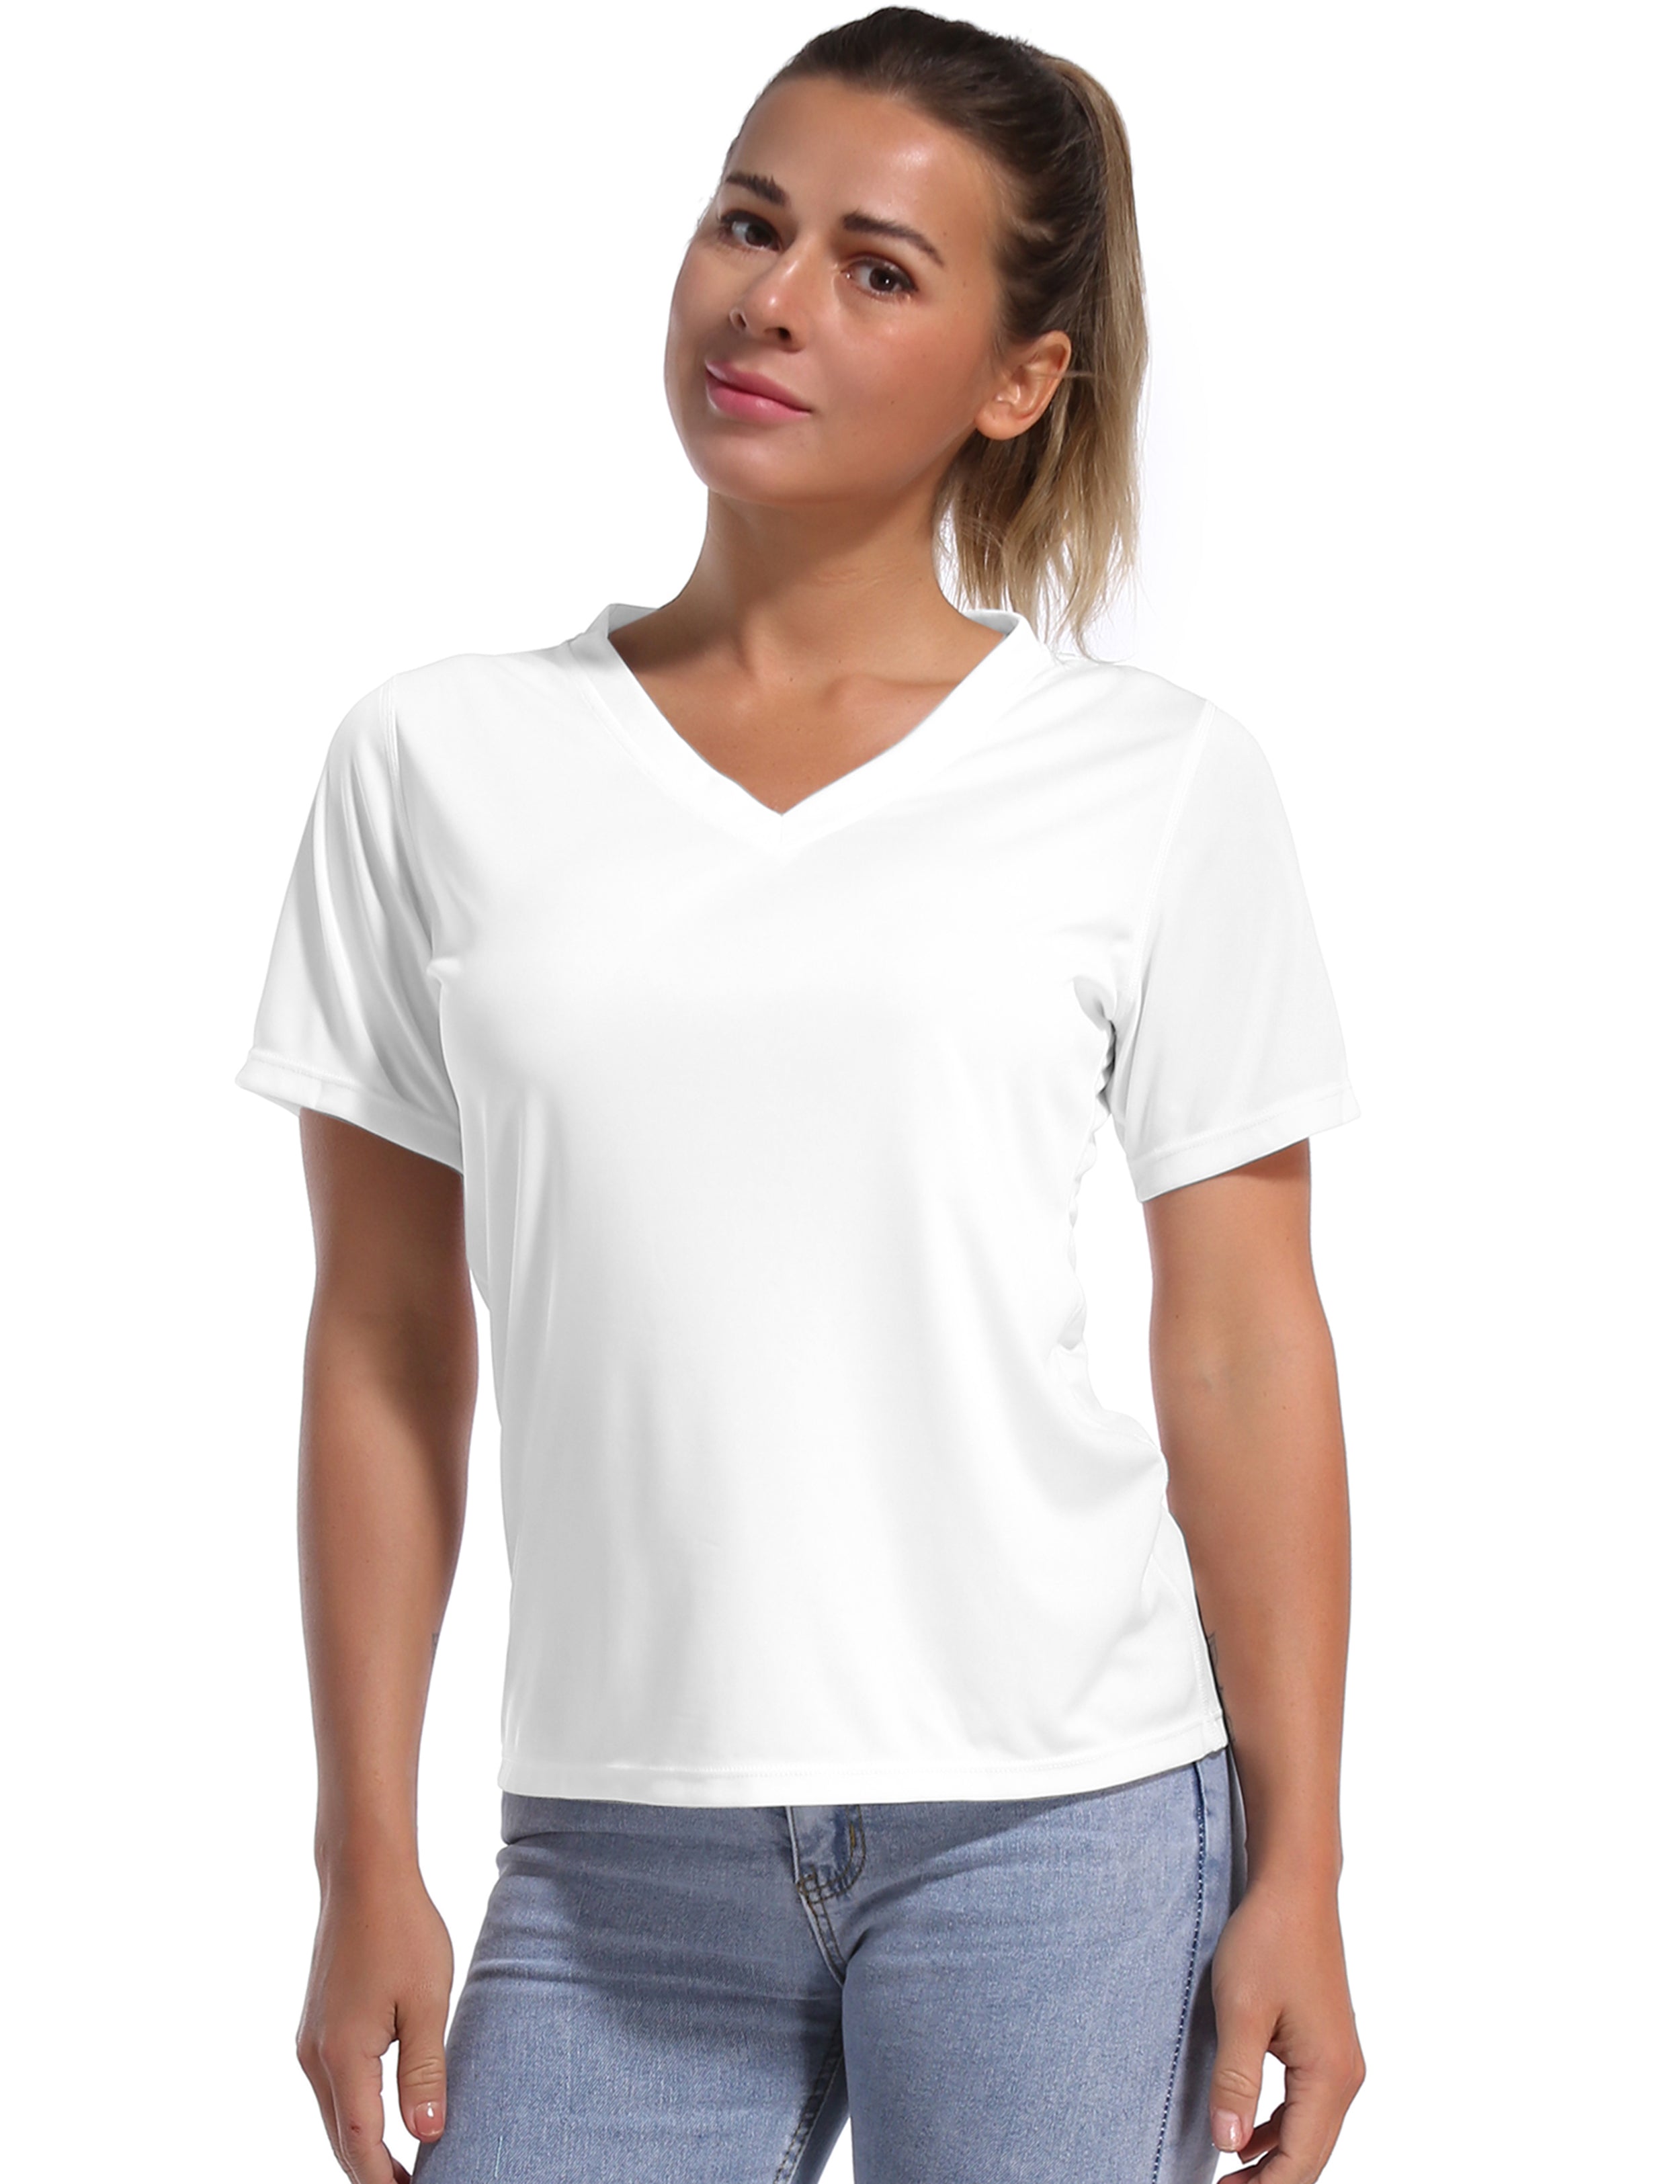 V-Neck Short Sleeve Athletic Shirts white_Golf